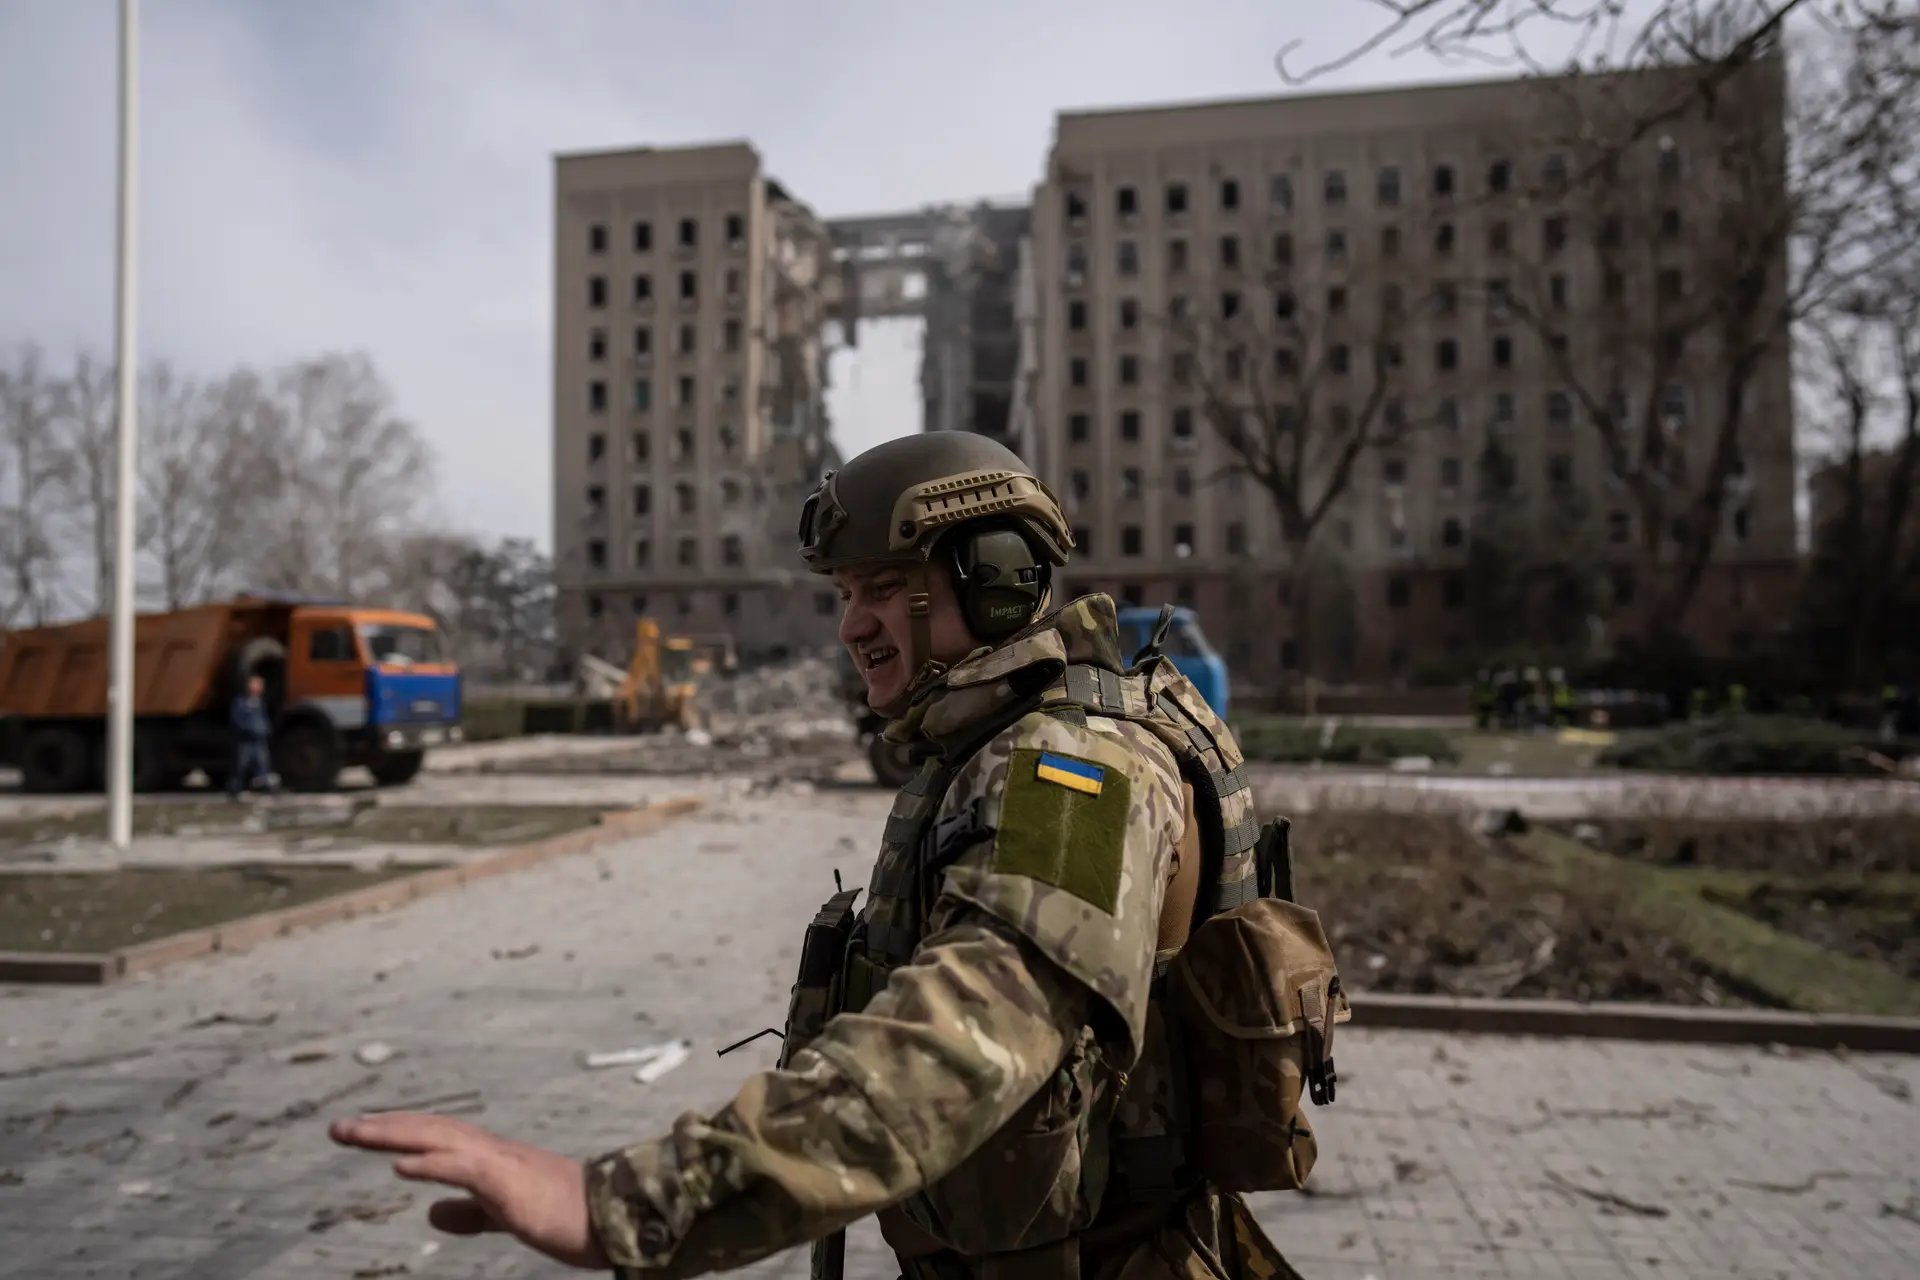 “O inimigo perdeu 36 homens em 24 horas” nas batalhas a norte de Mykolaiv, dizem tropas ucranianas